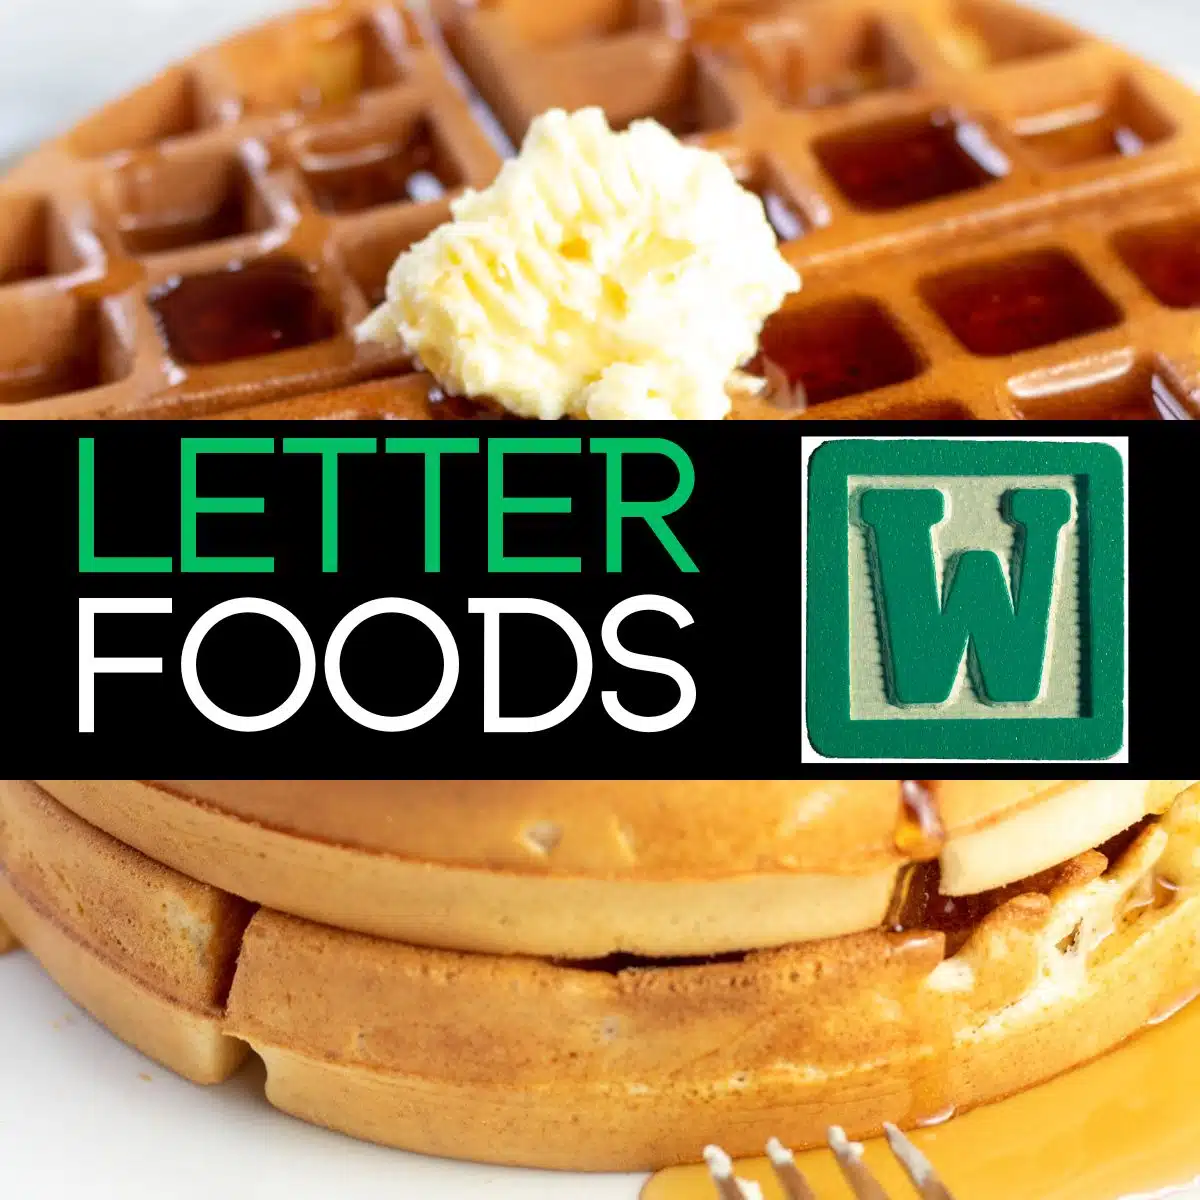 문자 w로 시작하는 음식에 대한 텍스트가 포함된 정사각형 이미지로, 사진에는 와플이 포함되어 있습니다.